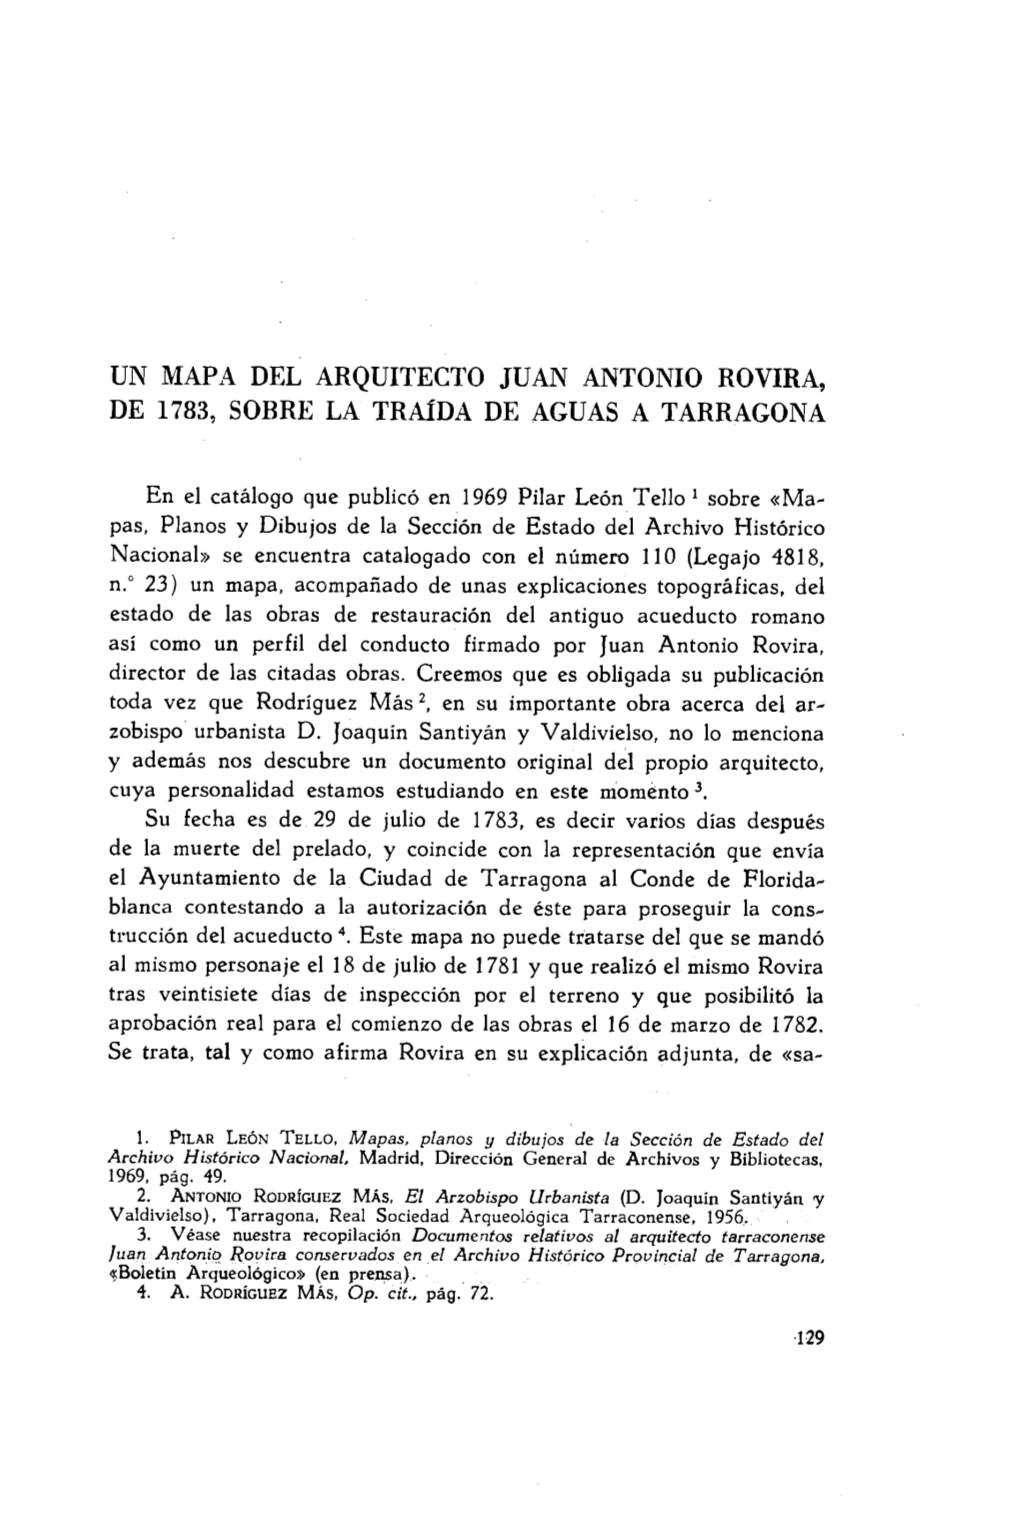 UN MAPA DEL ARQUITECTO JUAN ANTONIO ROVIRA, DE 1783, SOBRE LA Trafda DE AGUAS a TARRAGONA